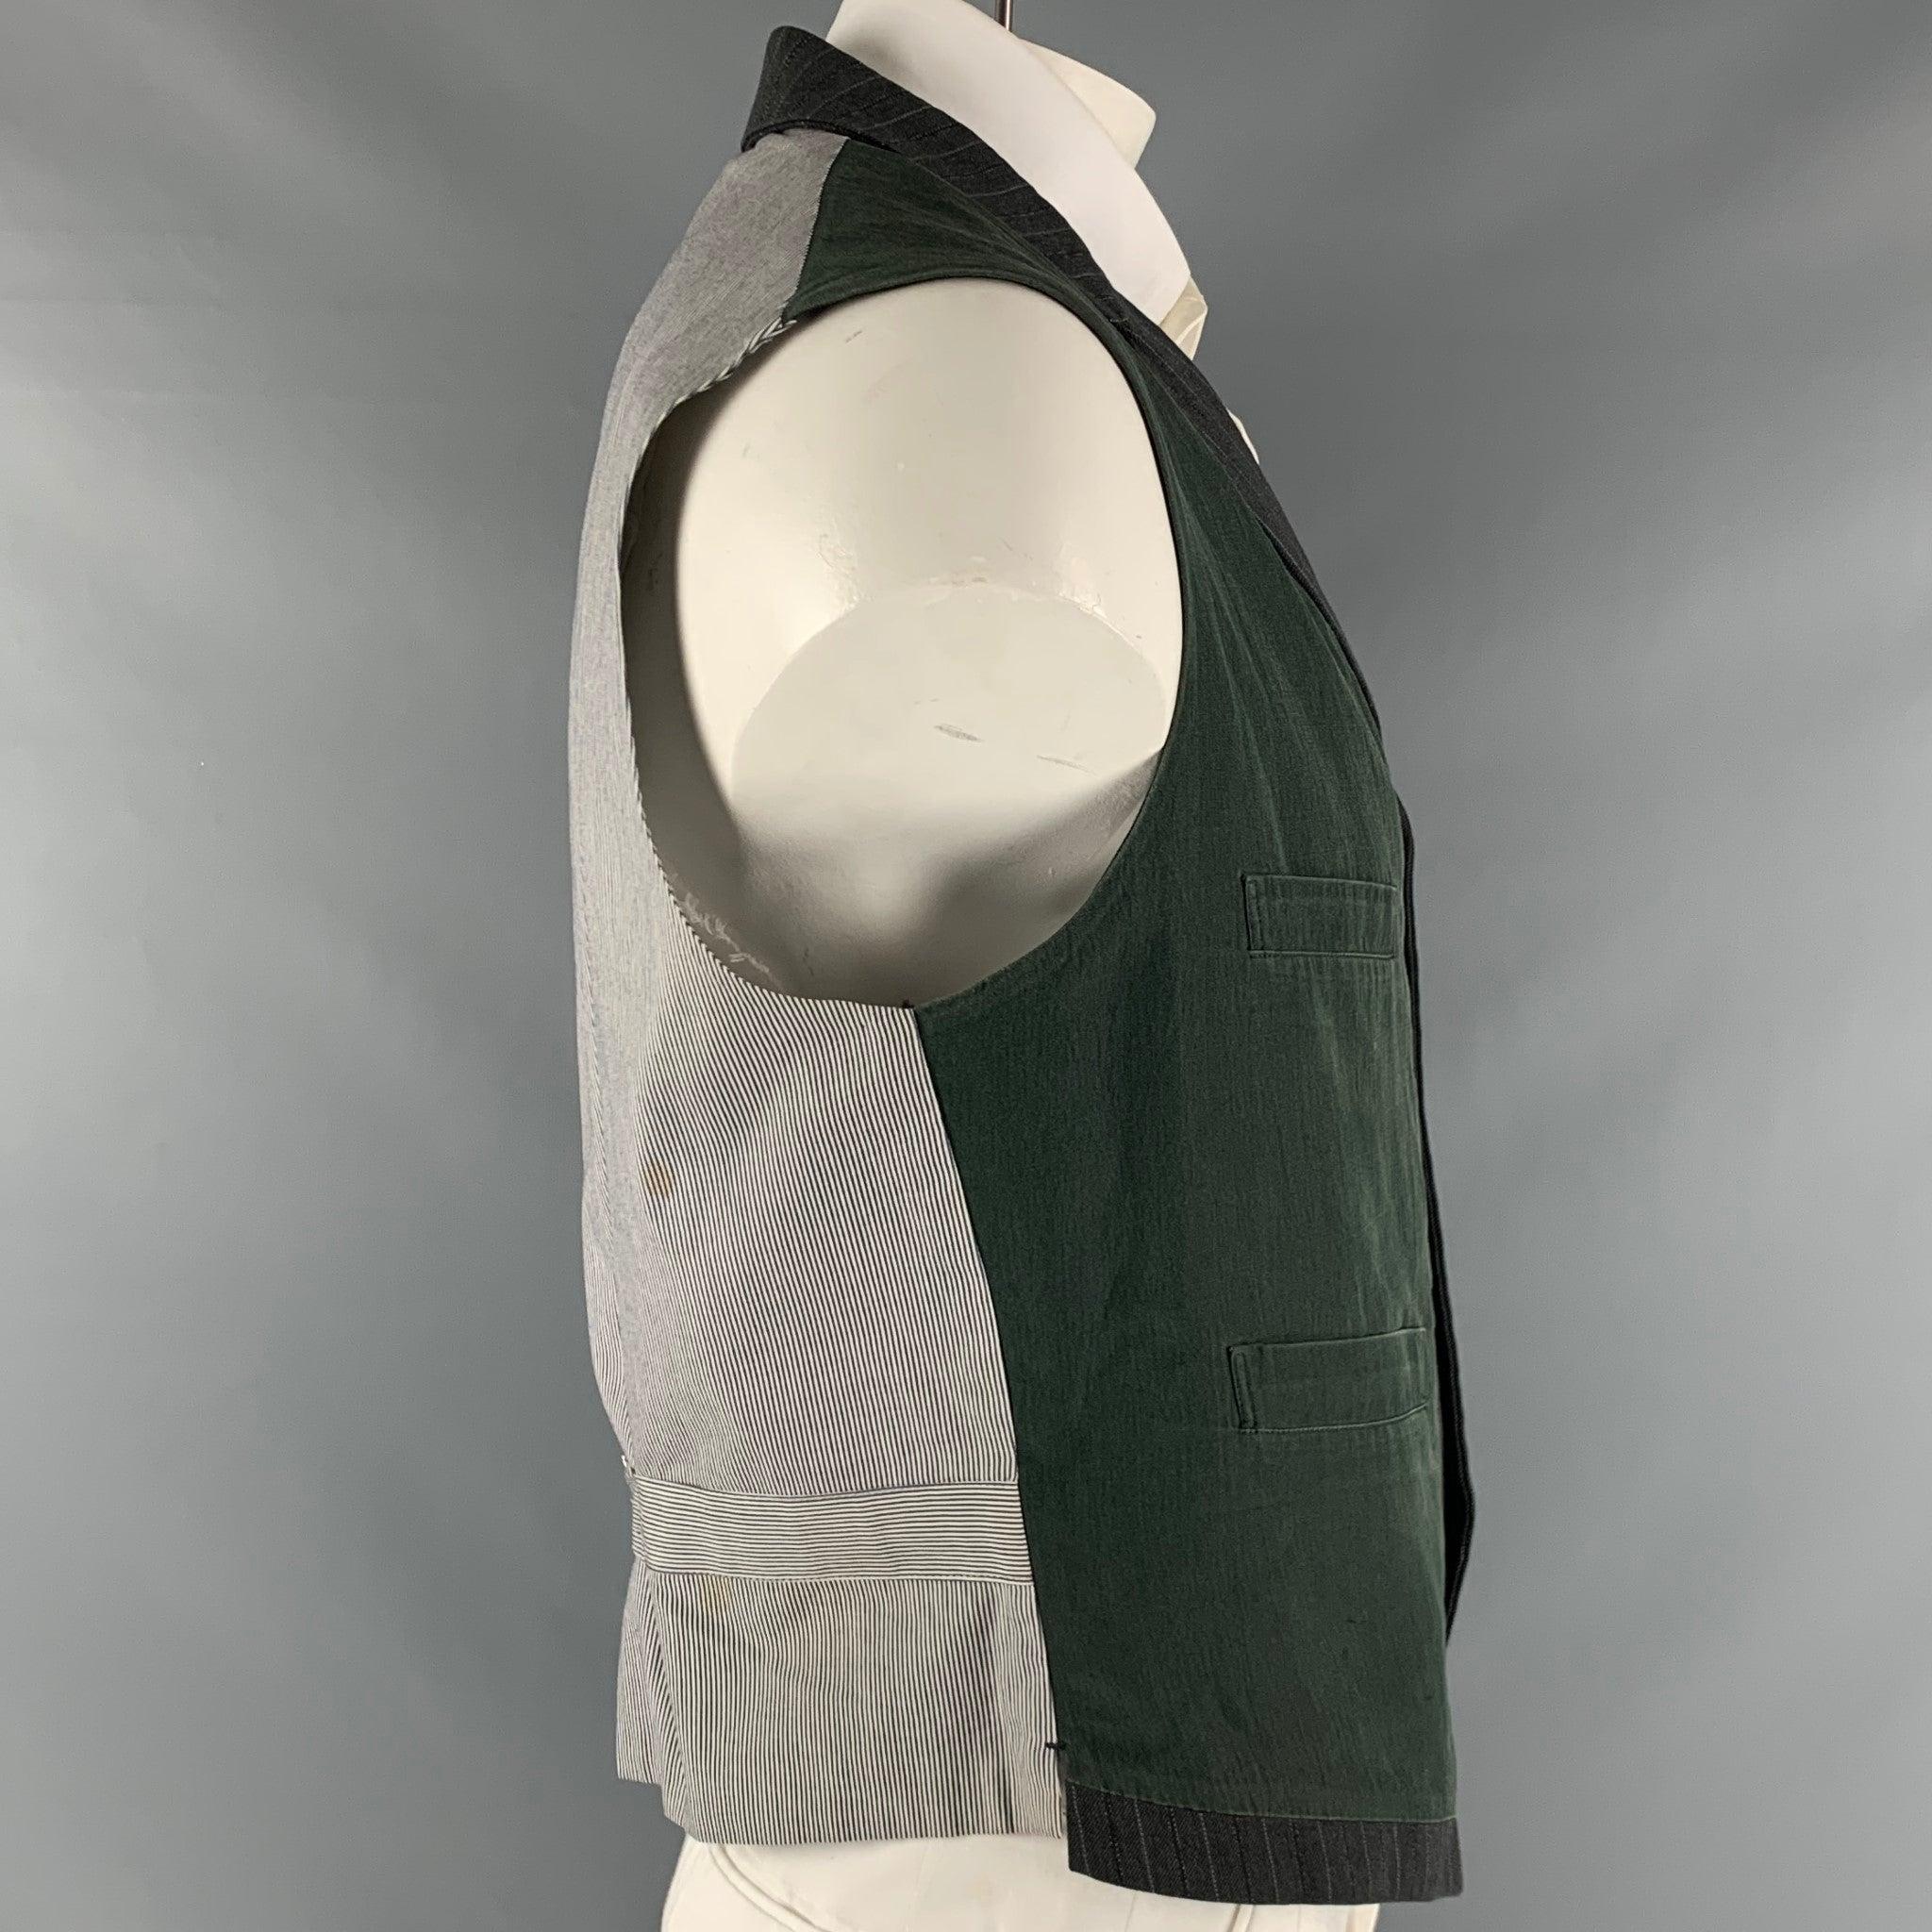 Le gilet Circa'91 de YOHJI YAMAMOTO est réalisé en soie mélangée grise et vert foncé. Il présente des textures mixtes, un revers à cran, des poches passepoilées et une fermeture boutonnée. Fabriqué au Japon. Bon état d'usage. Marques modérées au dos